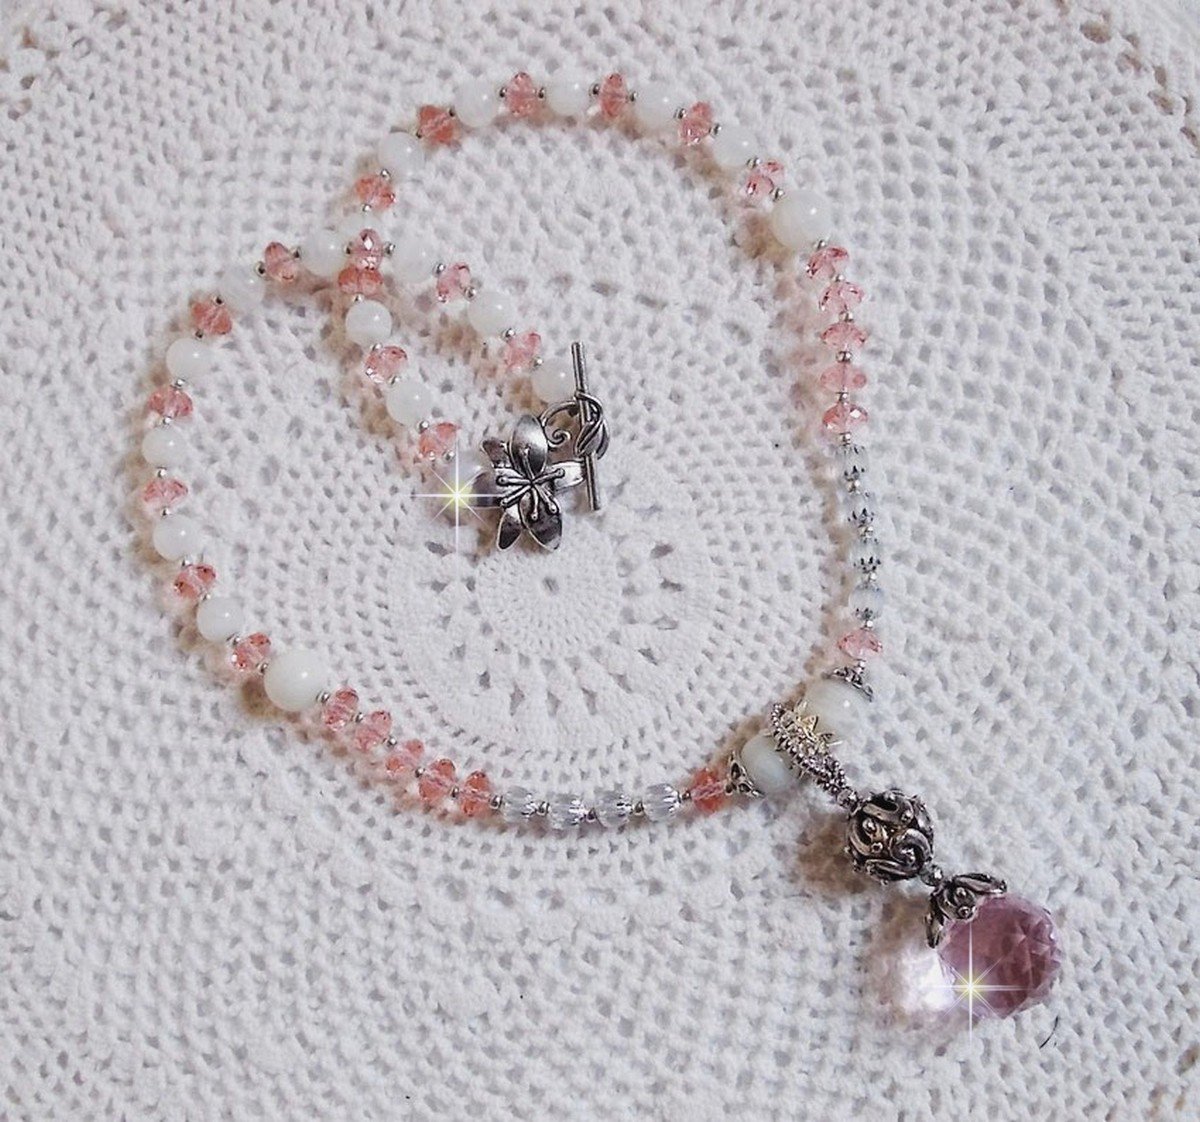 Pendentif Rose Irisé monté avec des perles rondes aplaties en cristal, des perles de gemme : la pierre de lune, des coupelles dômes, une perle d’espacement strassée, perles lisses et filigranées